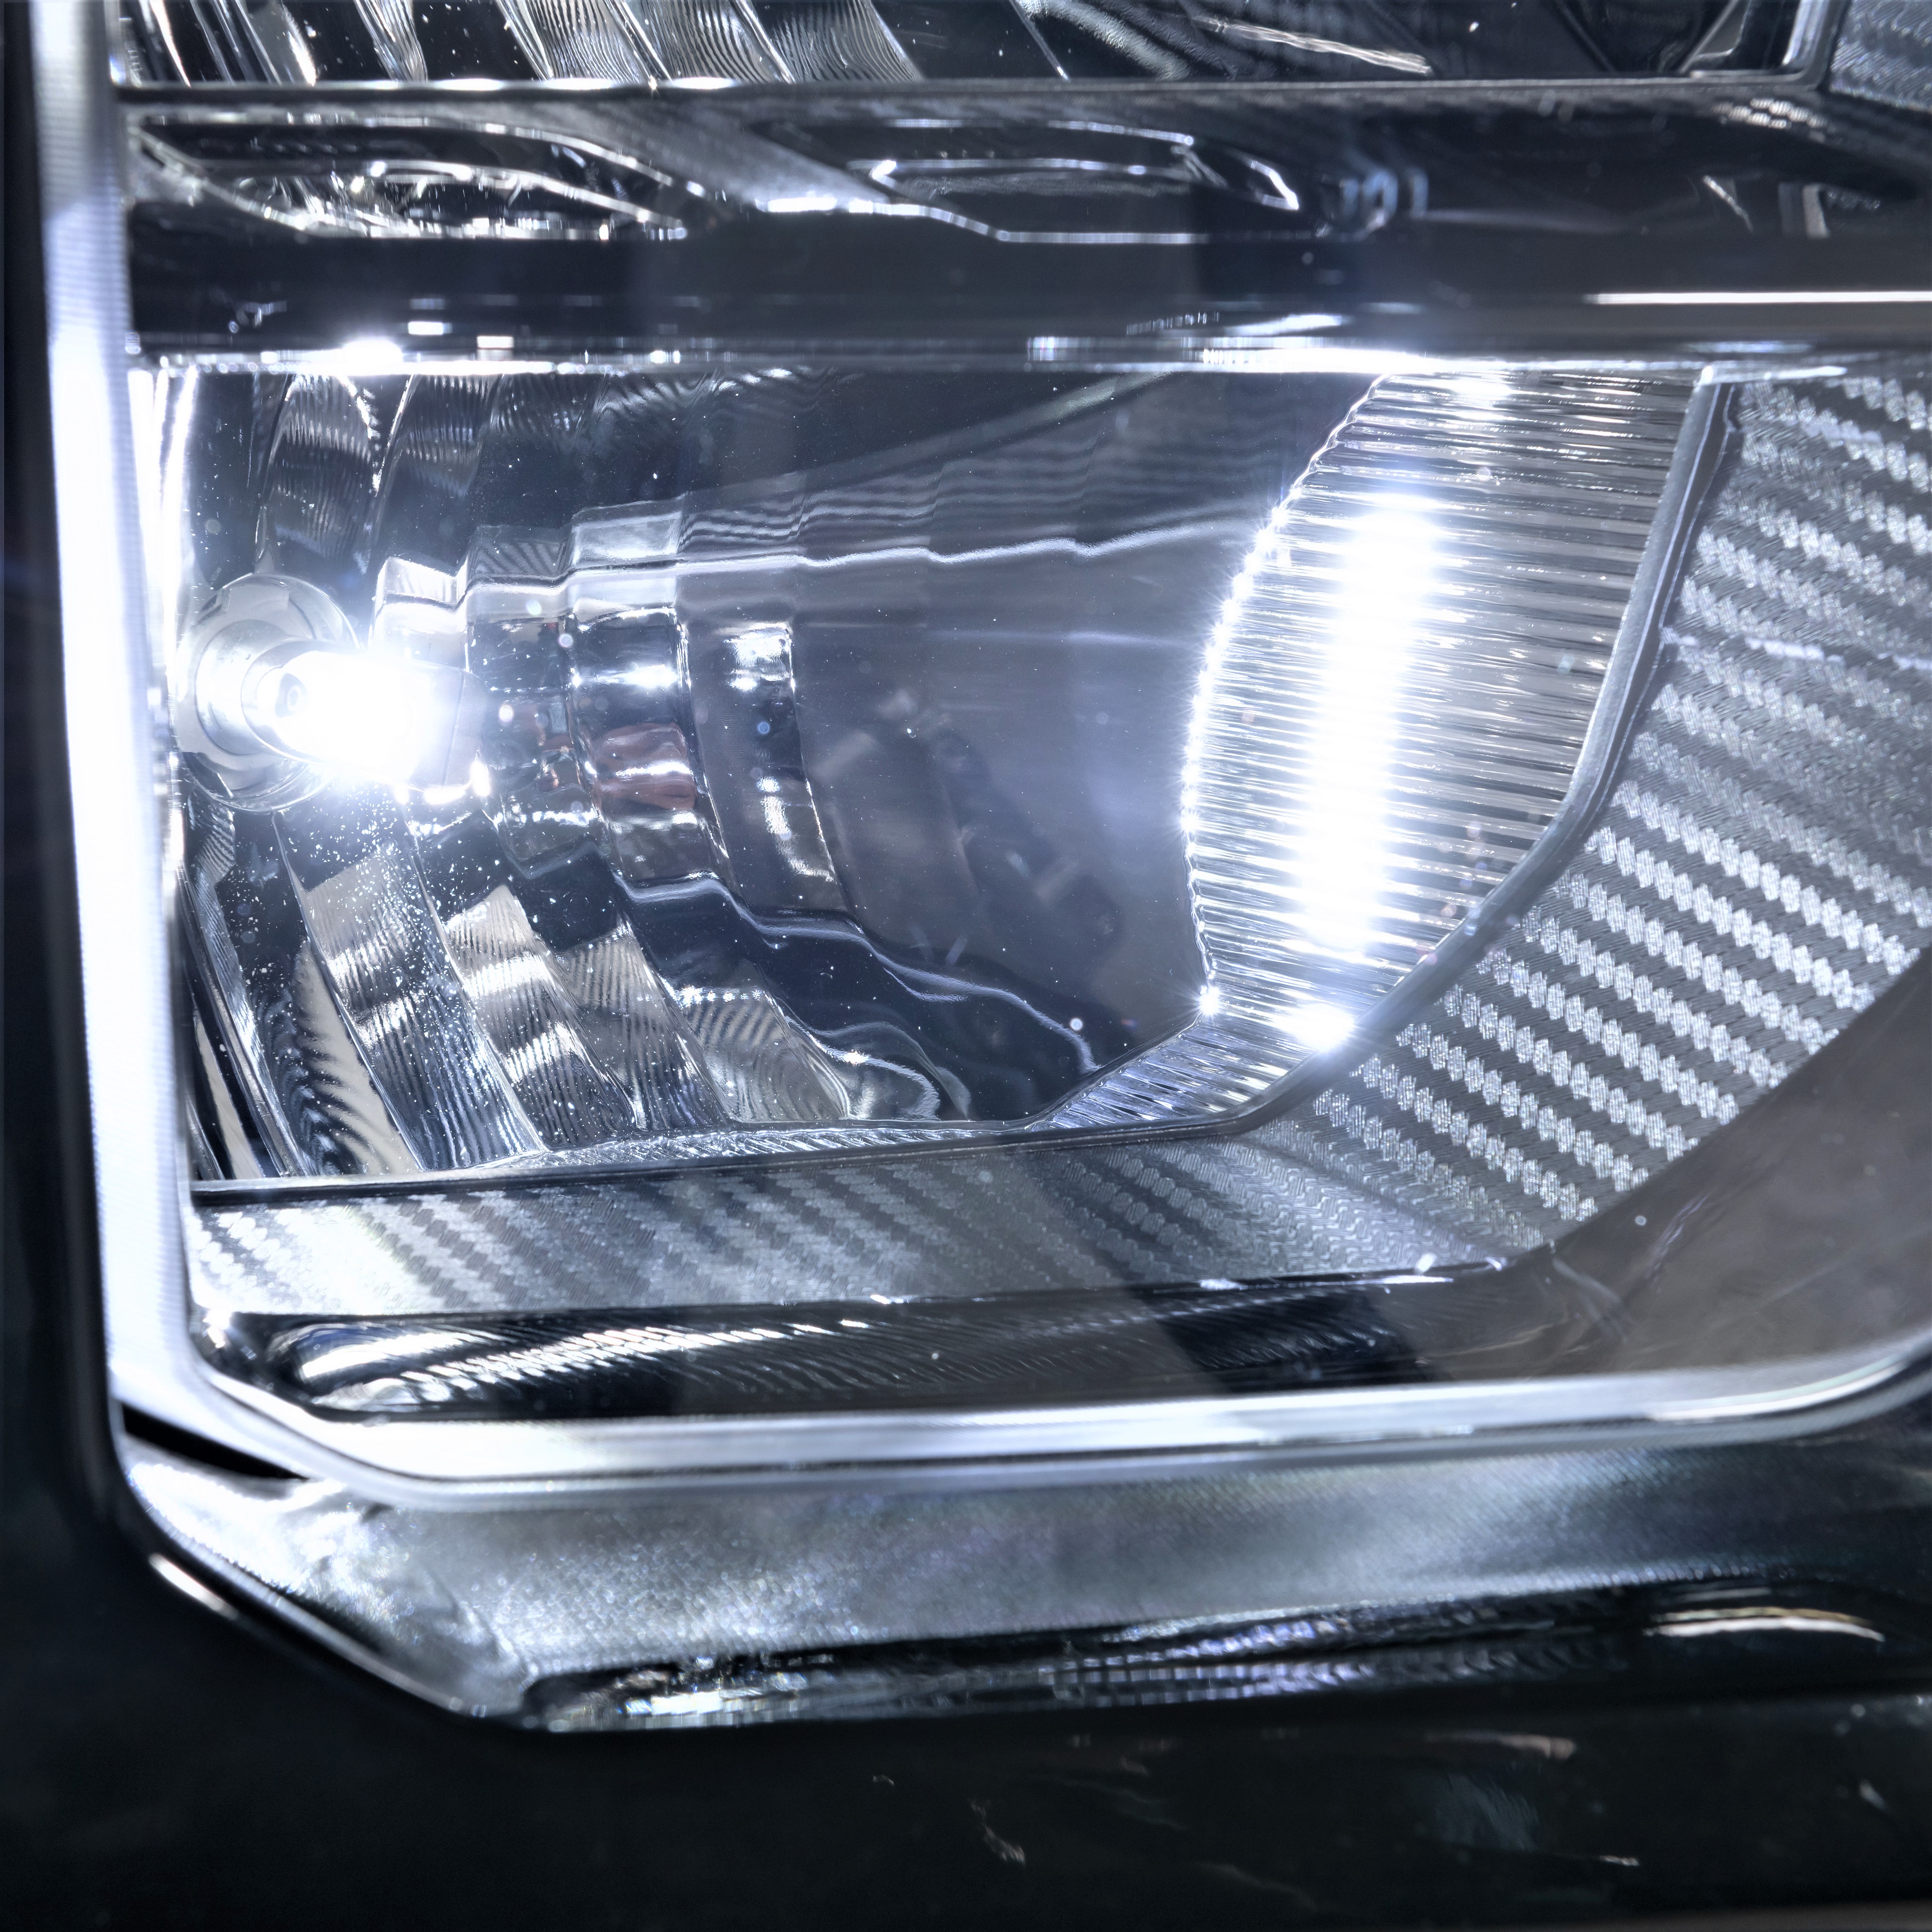 LED Lighting for Trucks - LUX Lighting Systems